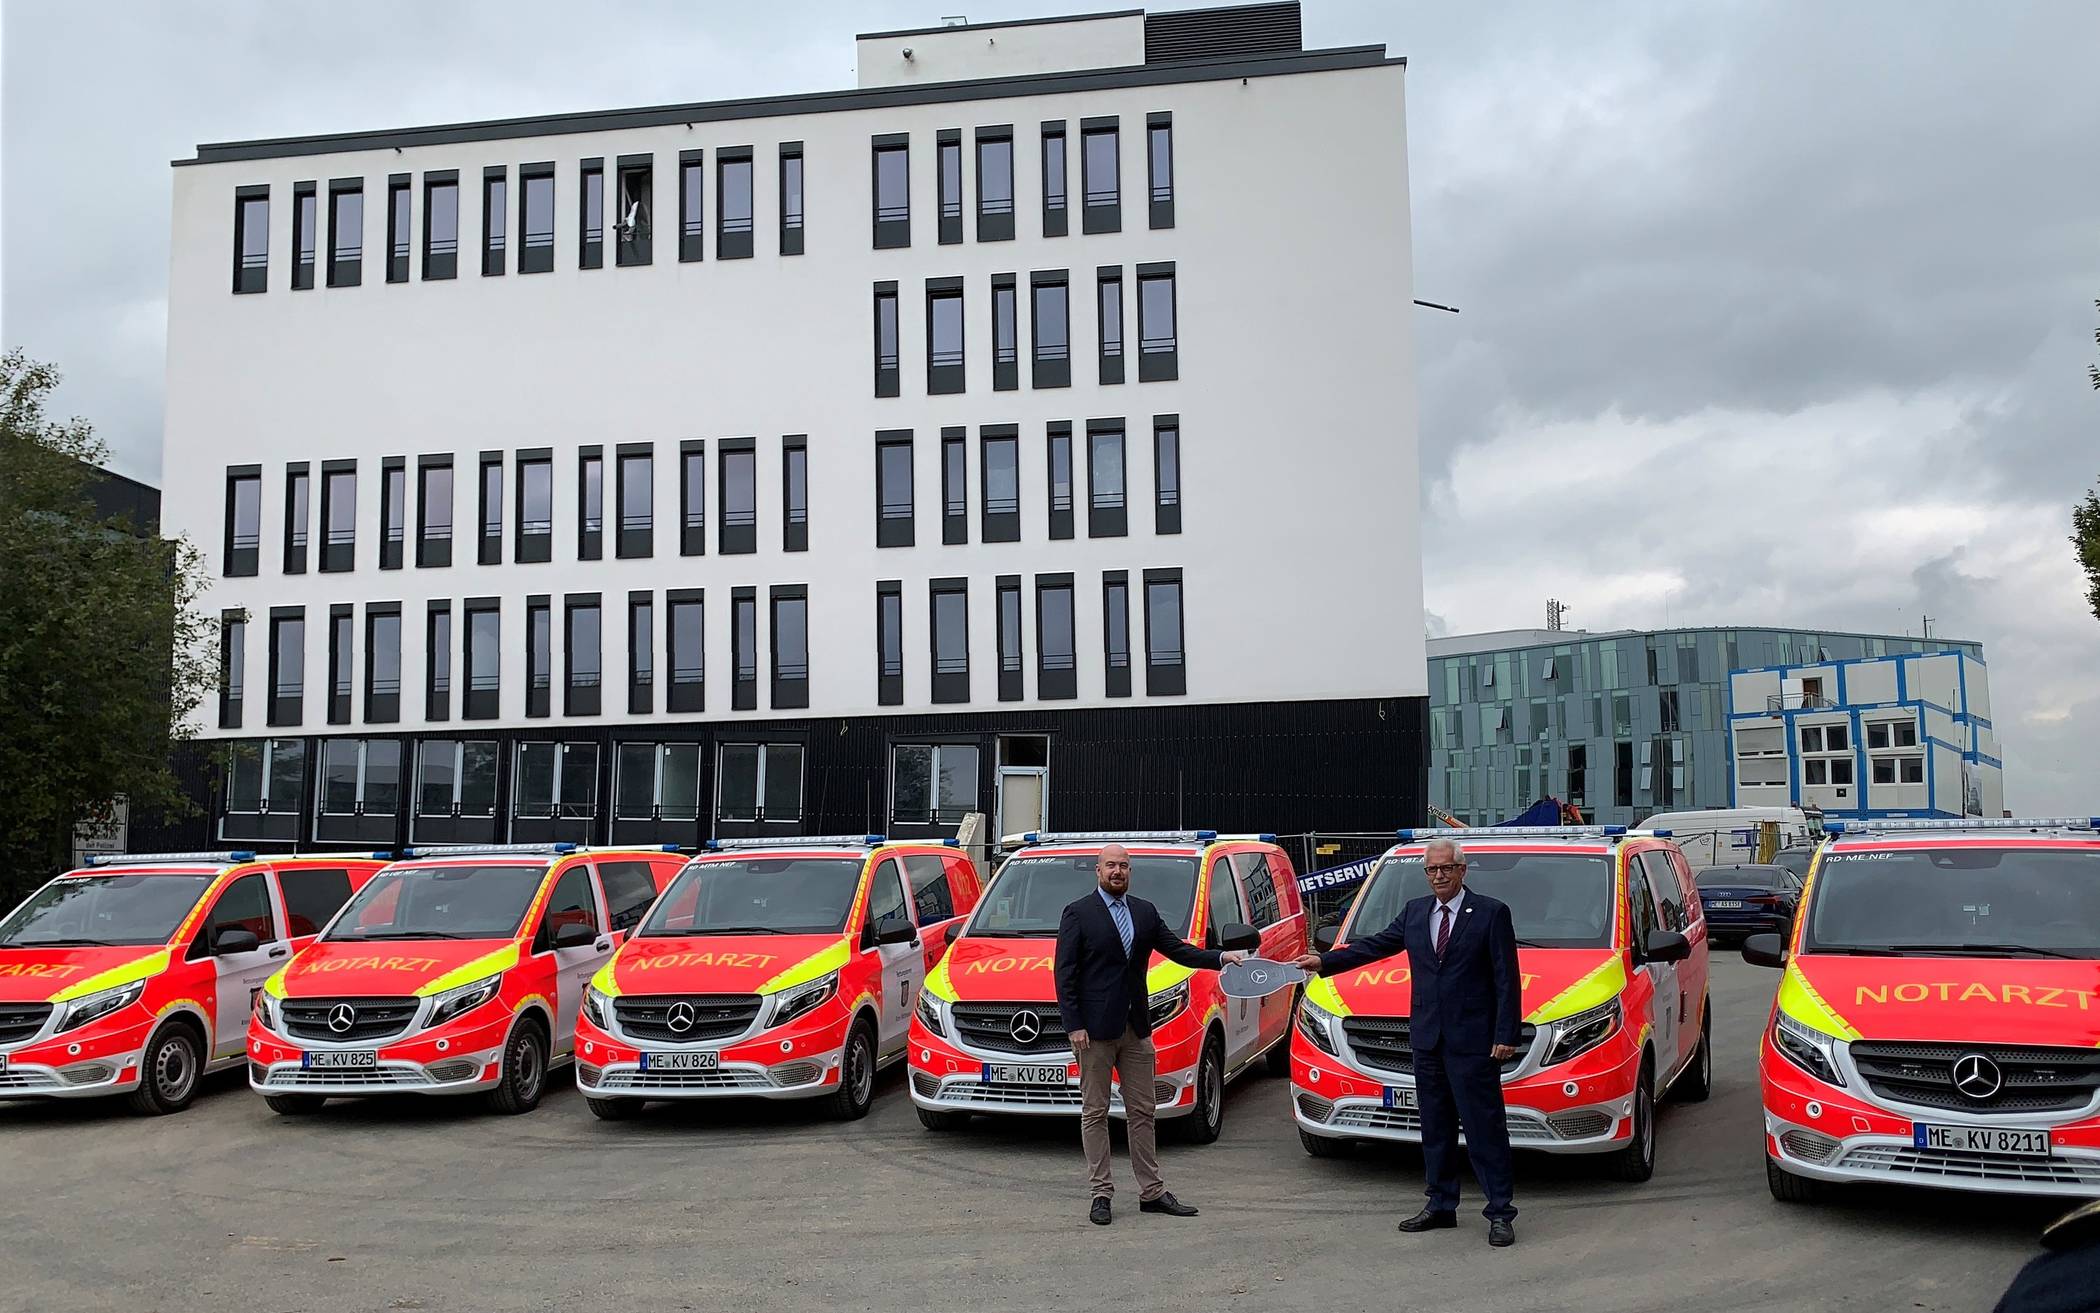 Sechs neue Notarzteinsatzfahrzeuge für den Rettungsdienst